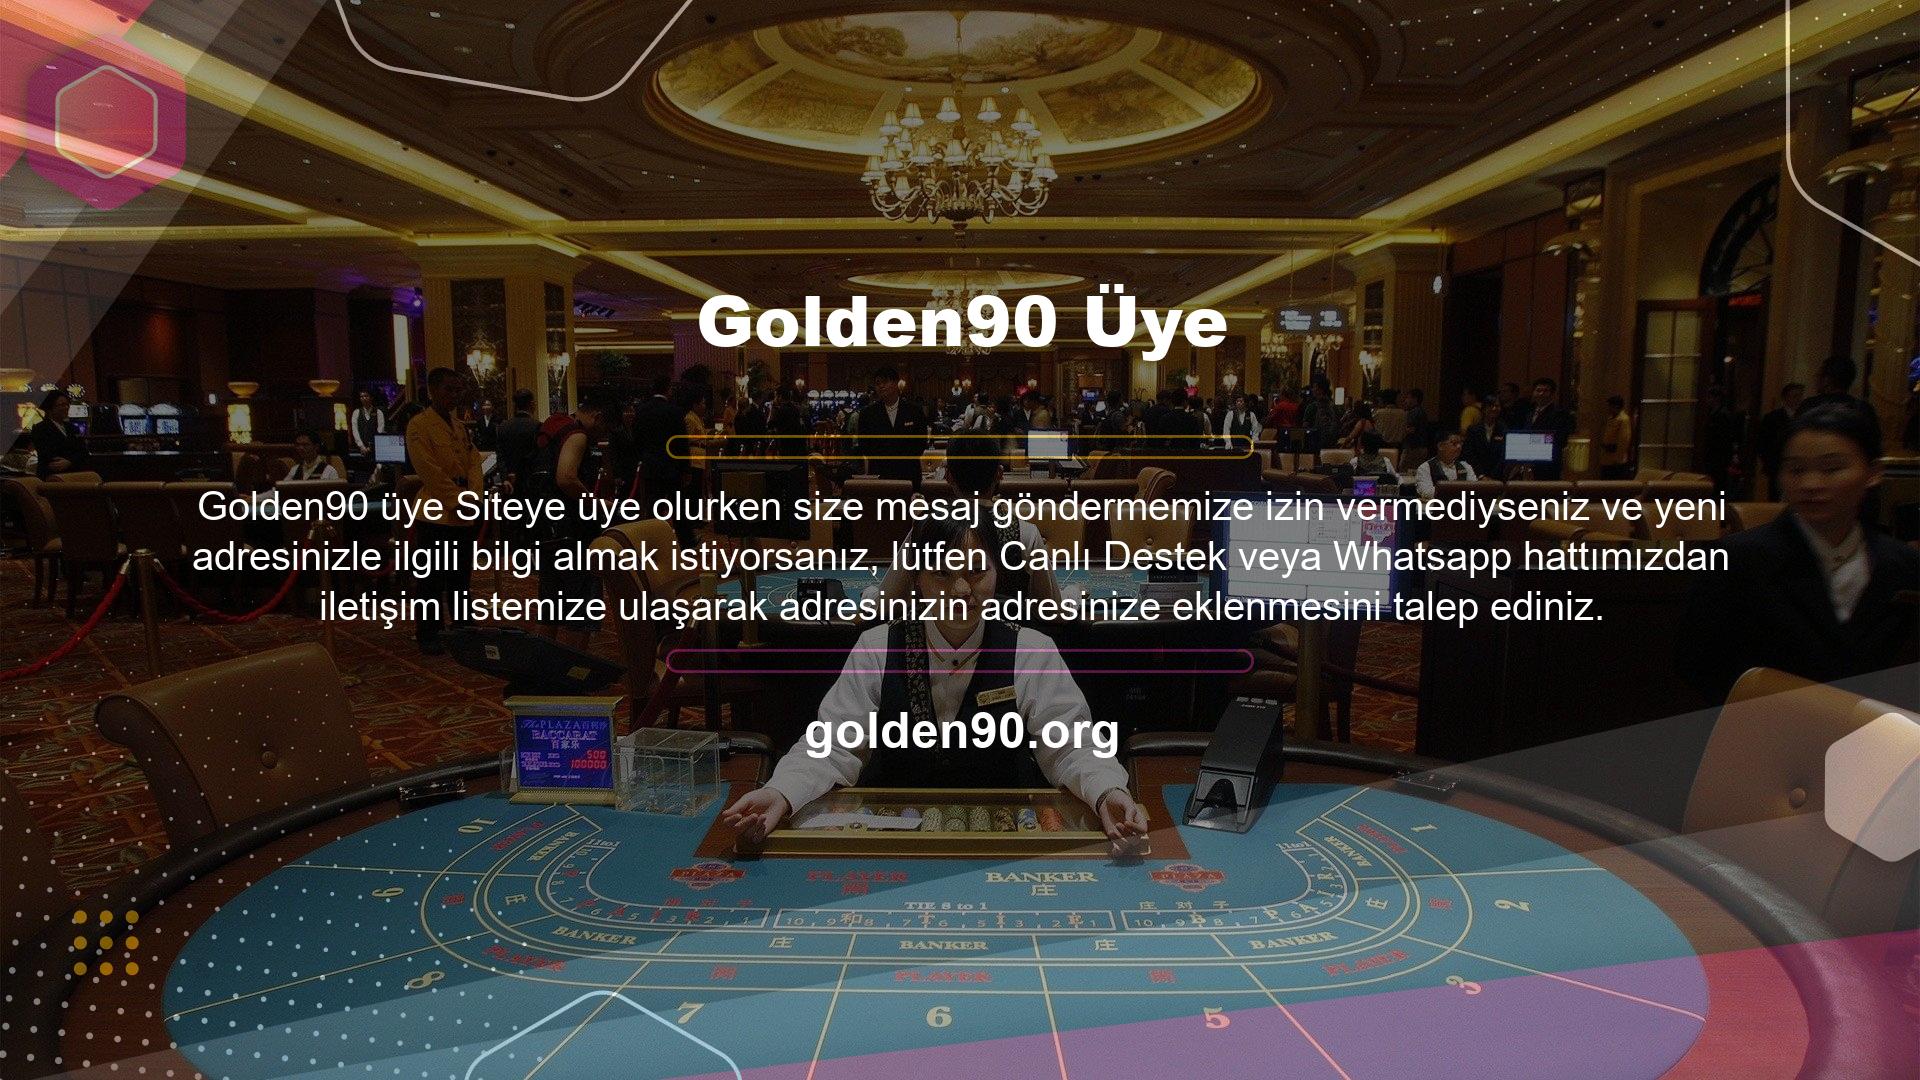 Golden90 web sitesini kullanırken belirtilen adres değiştiğinde birçok kişi bir arama motoru aracılığıyla mevcut web sitesi adresine erişmek ister